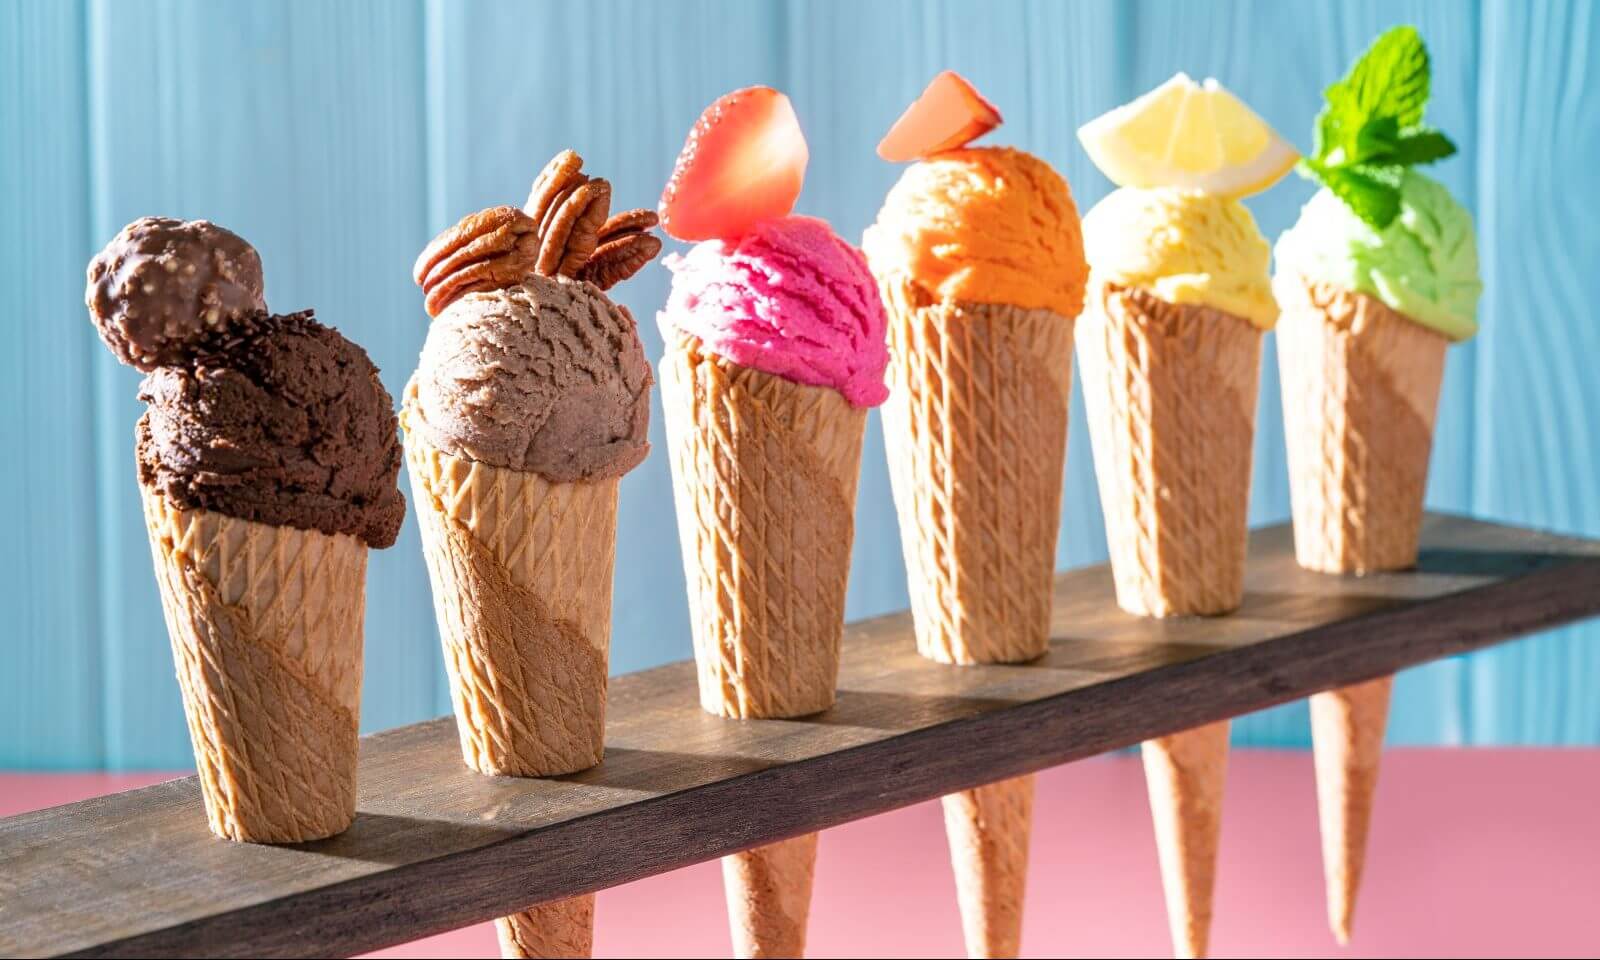 Какой десерт самый полезный в мире? Мороженое не всегда вредно для здоровья – на самом деле оно может иметь ряд важных преимуществ для здоровья. Изображение: healthnewshub.org. Фото.